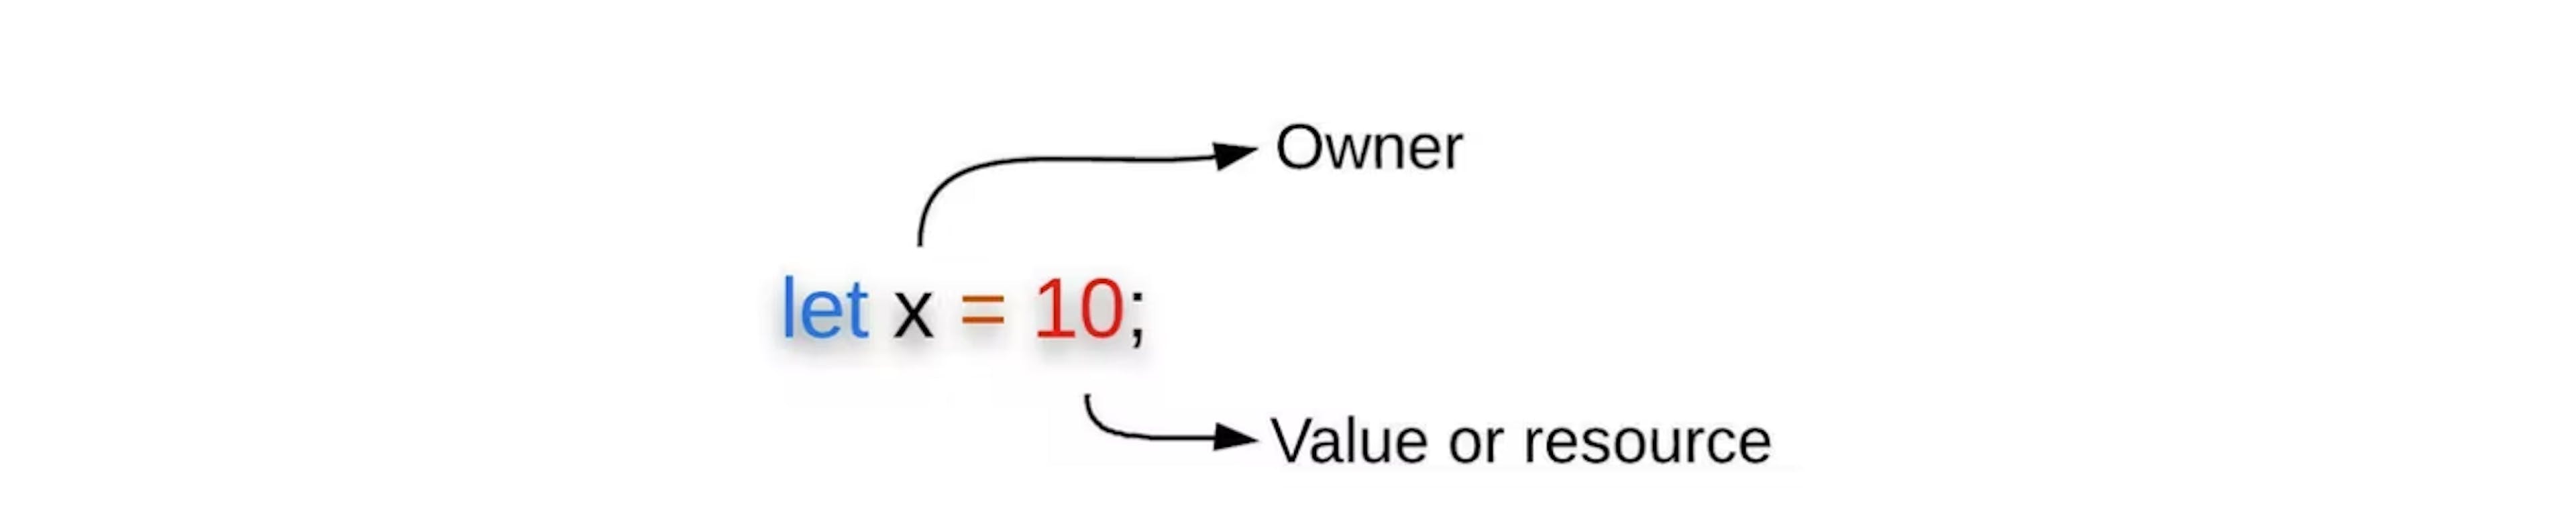 Figura 3: A vinculação de variáveis mostra o proprietário e seu valor/recurso.